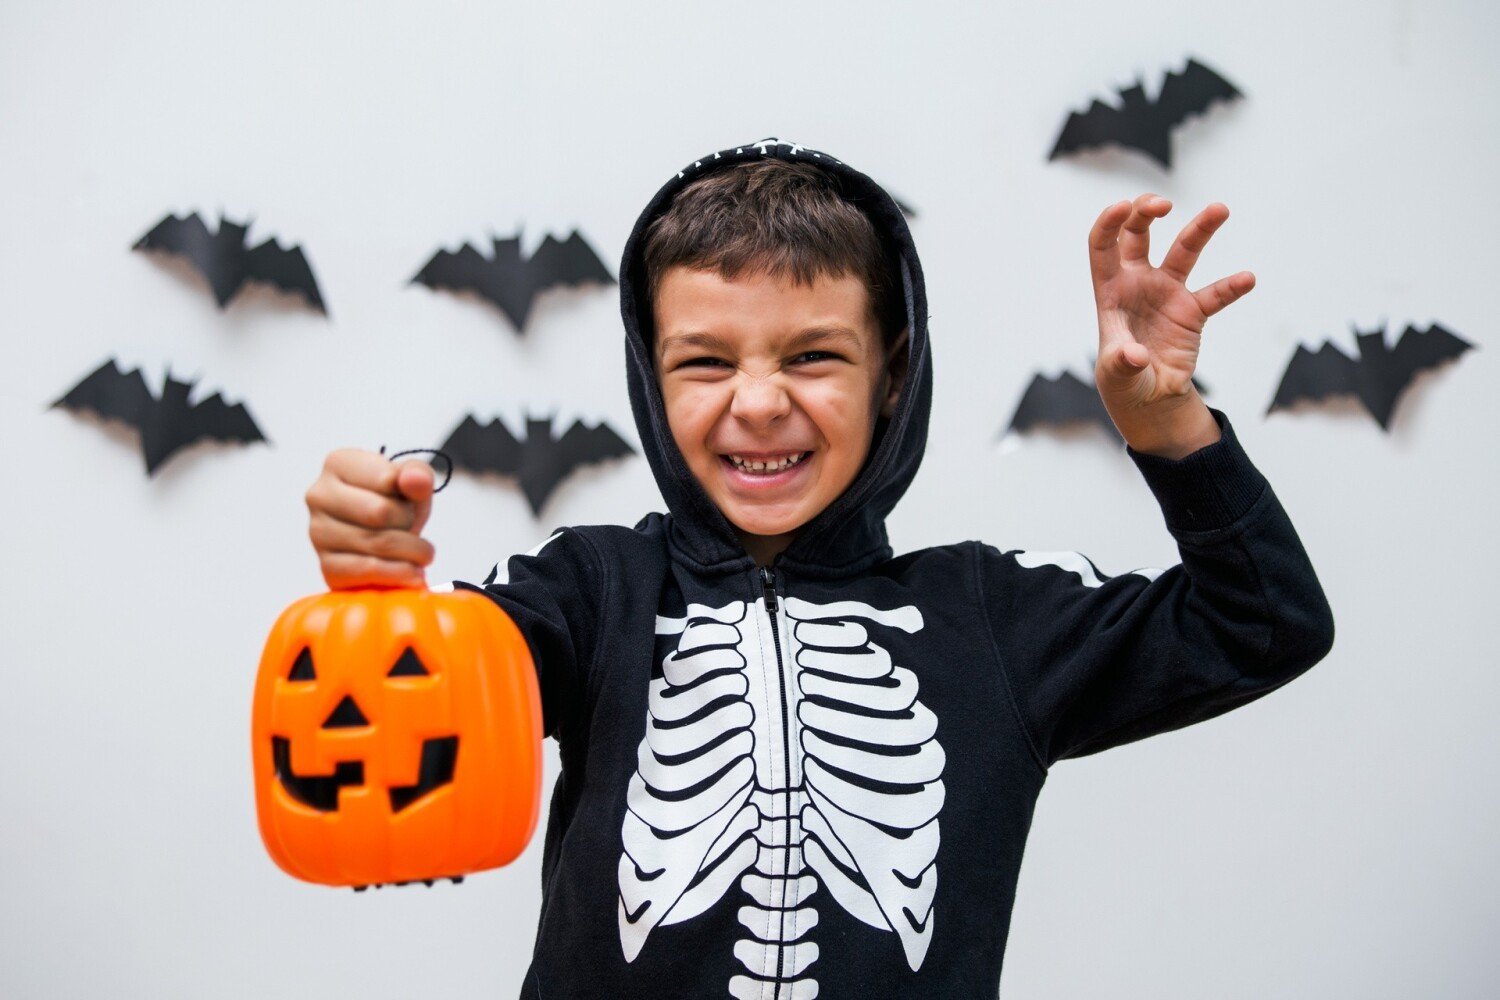 Przebranie na Halloween: pomysły na kostium dla chłopca | Nasze Miasto